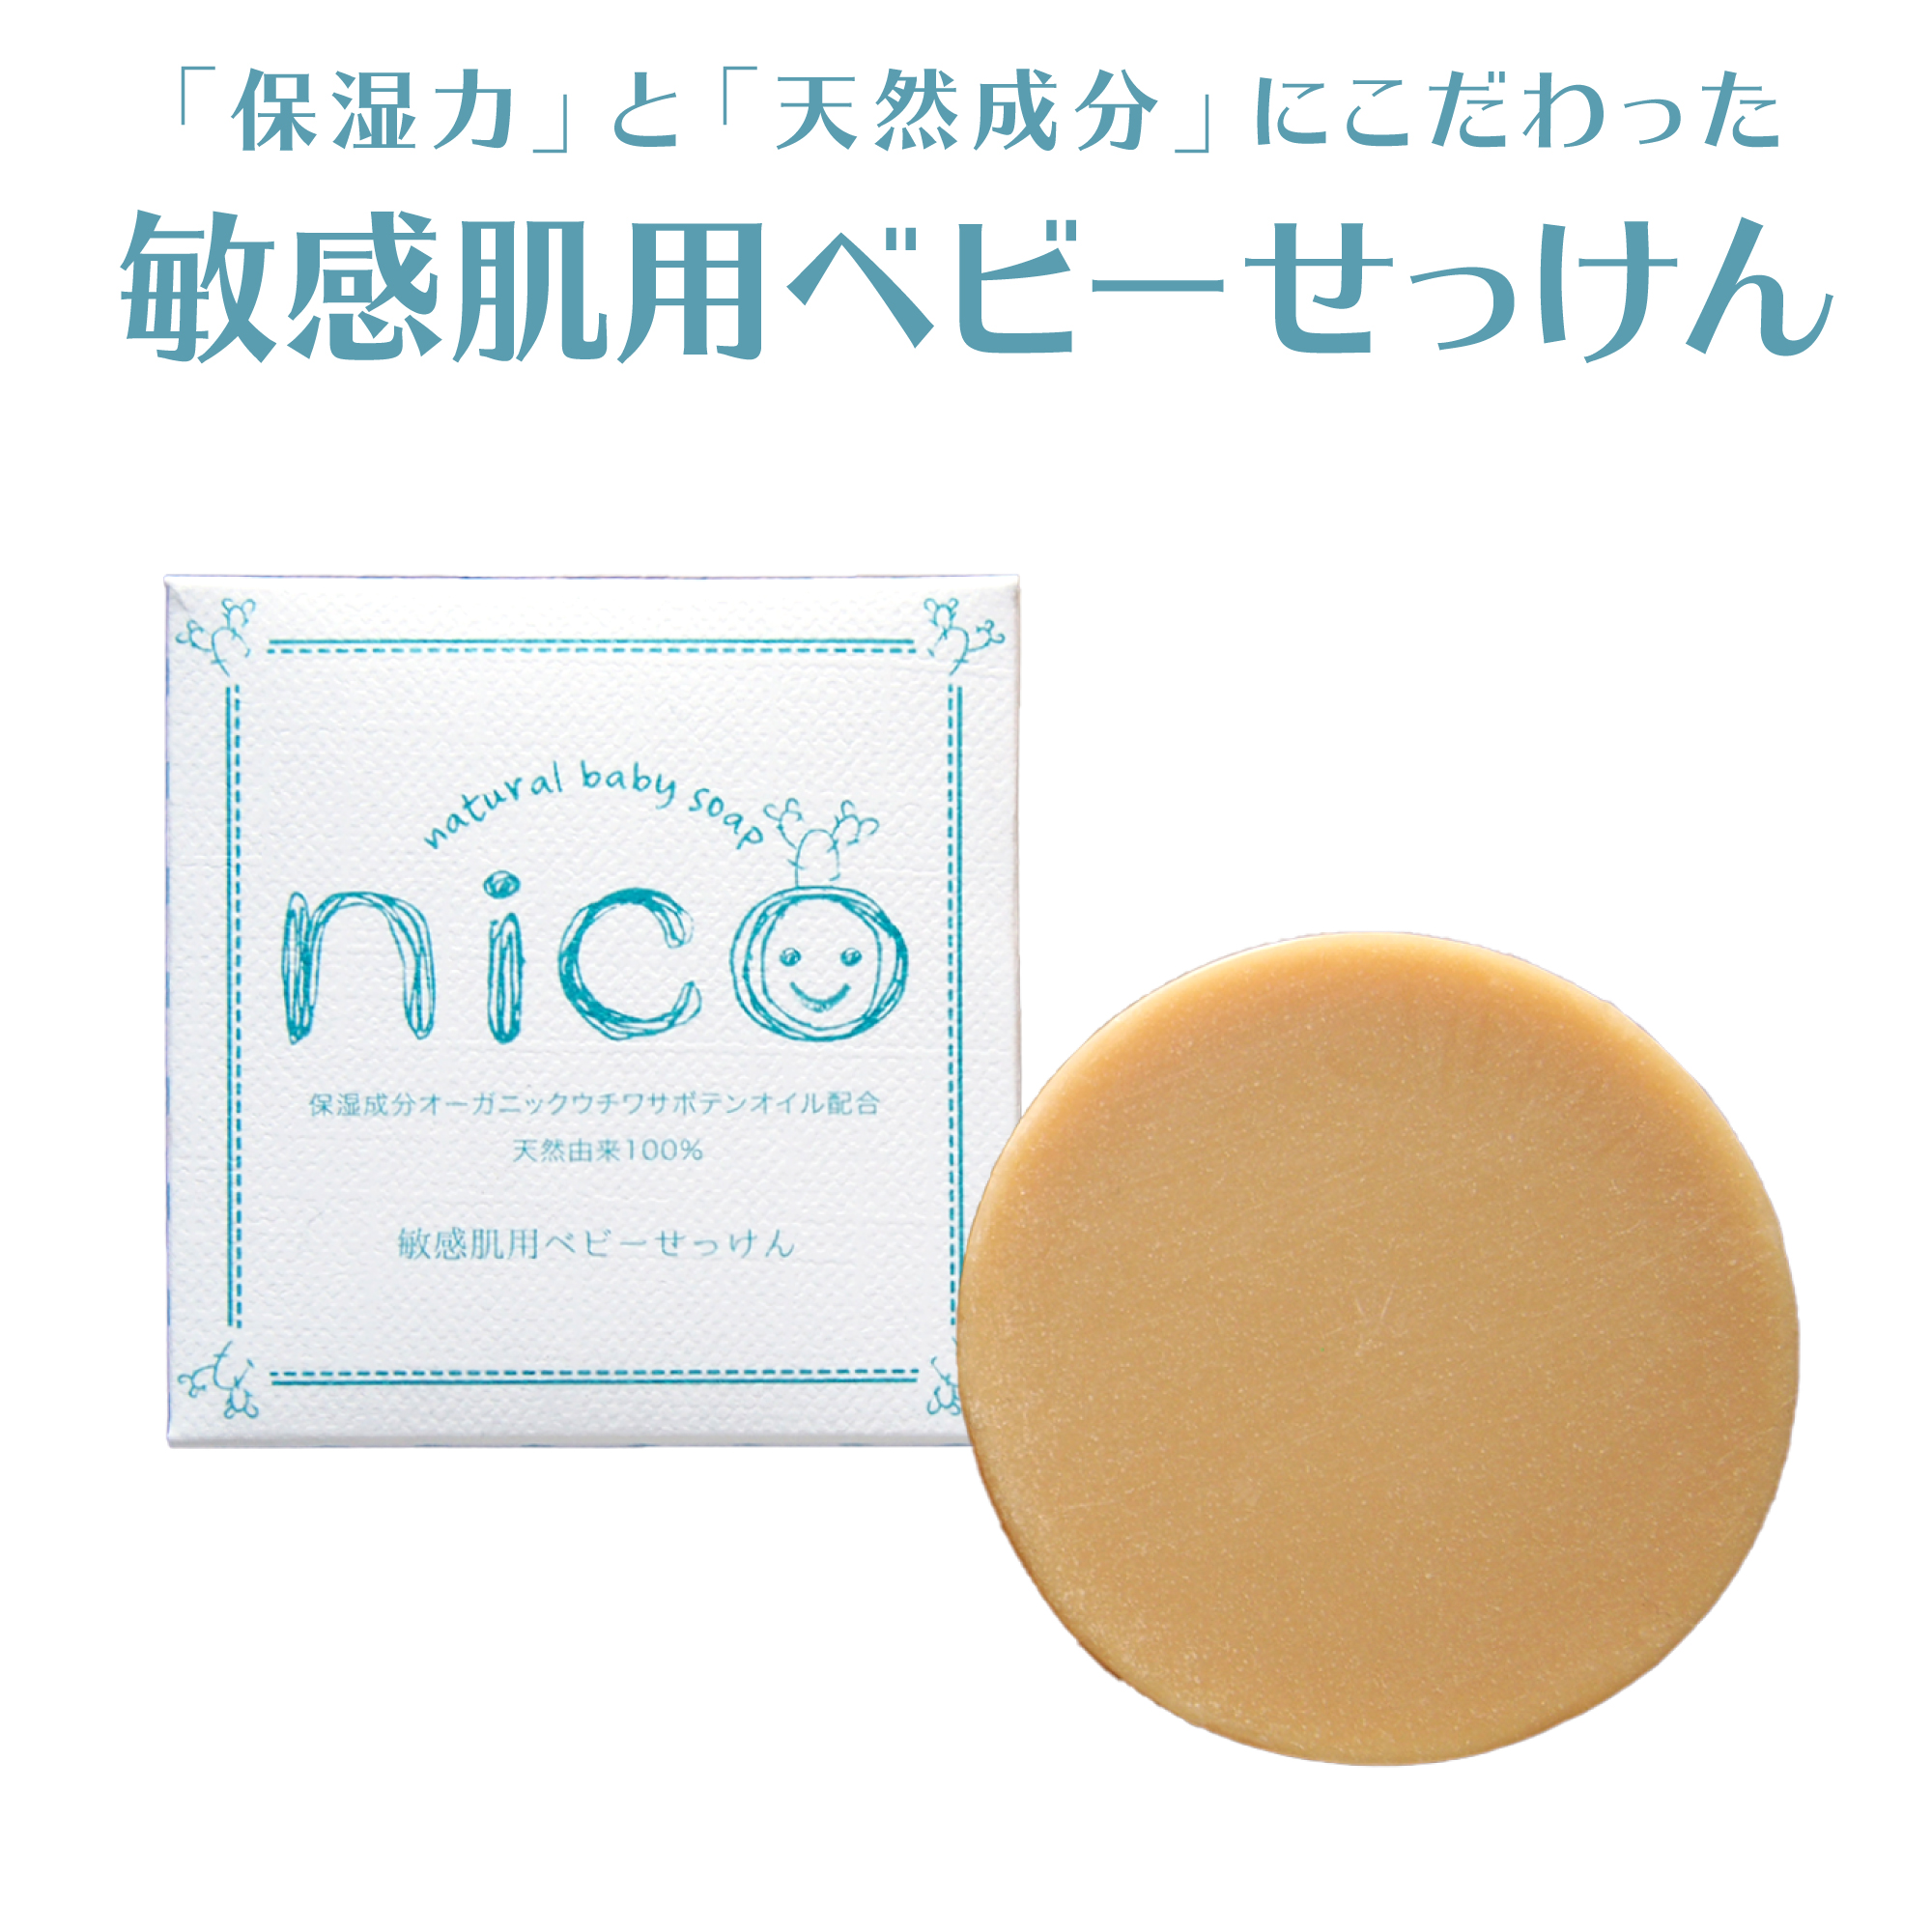 最新作の nico石鹸 50g